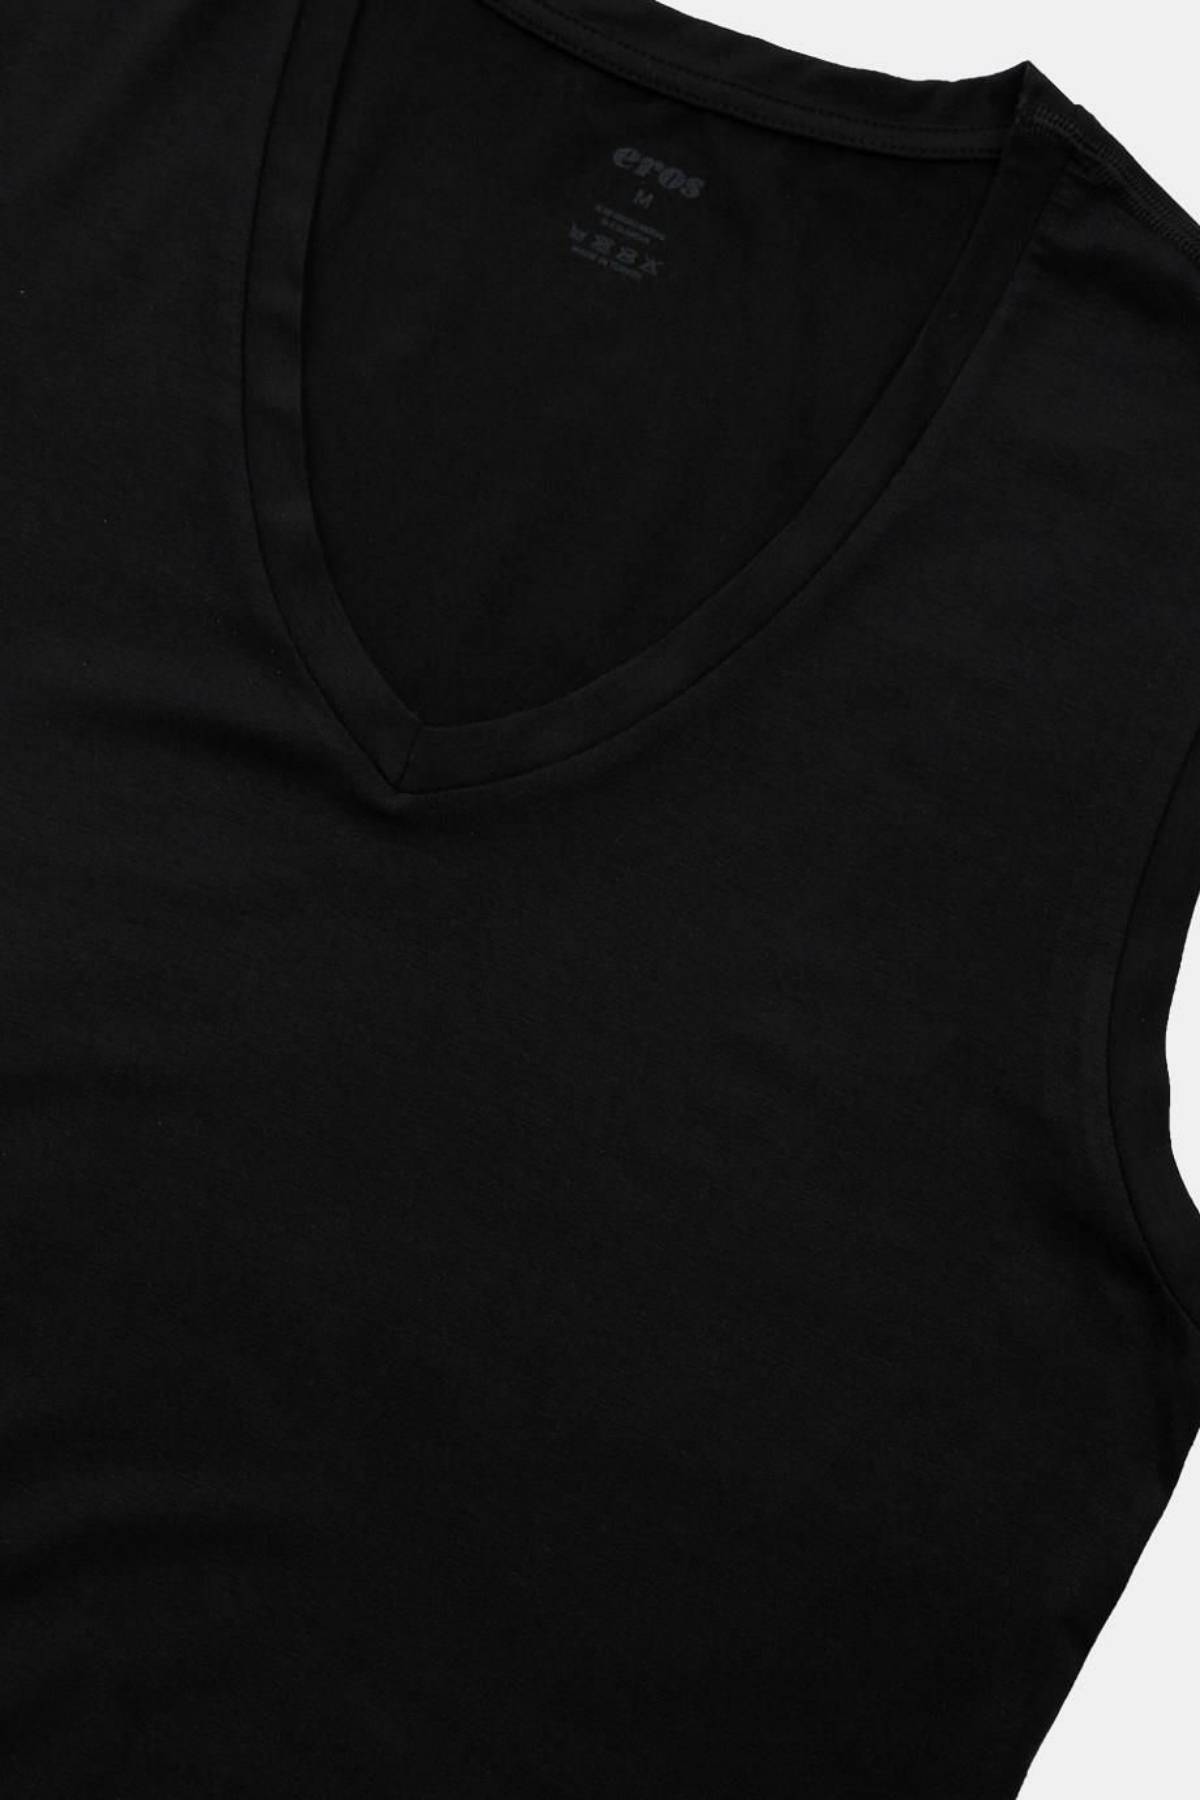 Eros Erkek Beyaz Ers053 Mıcro Modal V Yaka Kolsuz Tişört